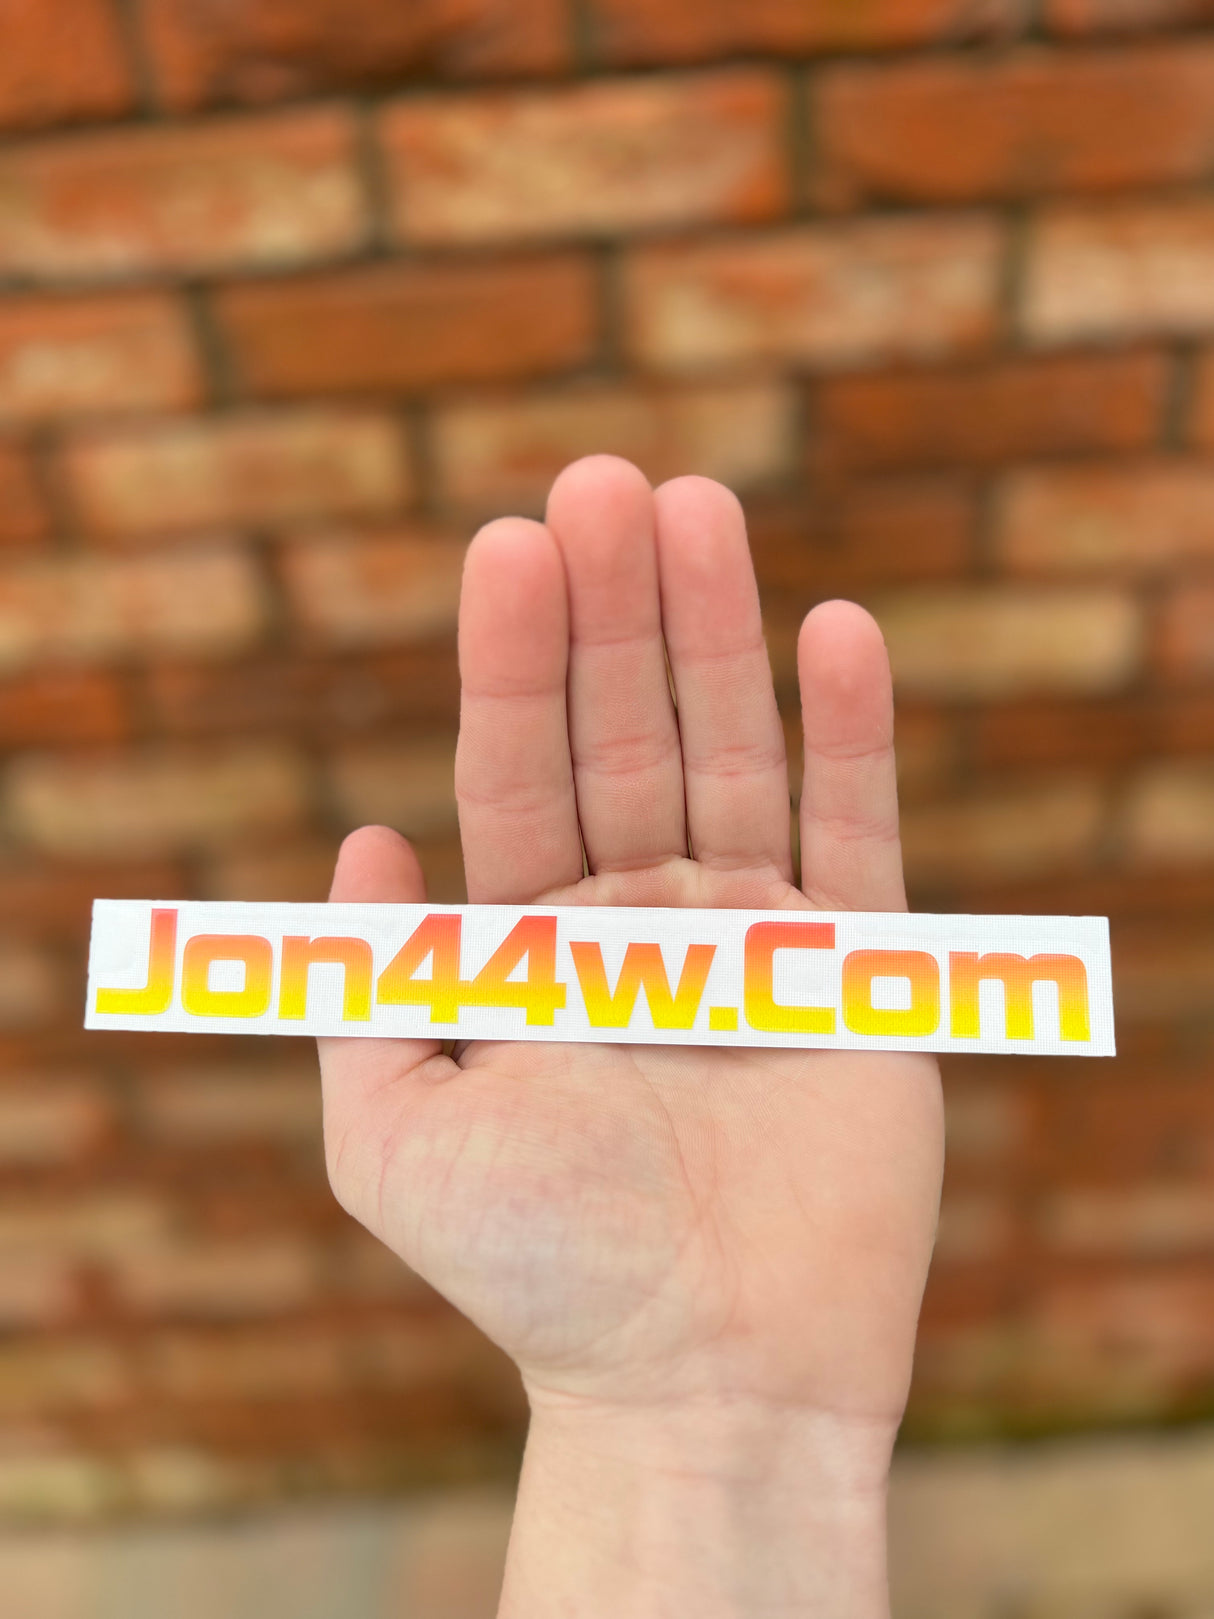 JON44W.COM Sticker 20Cm